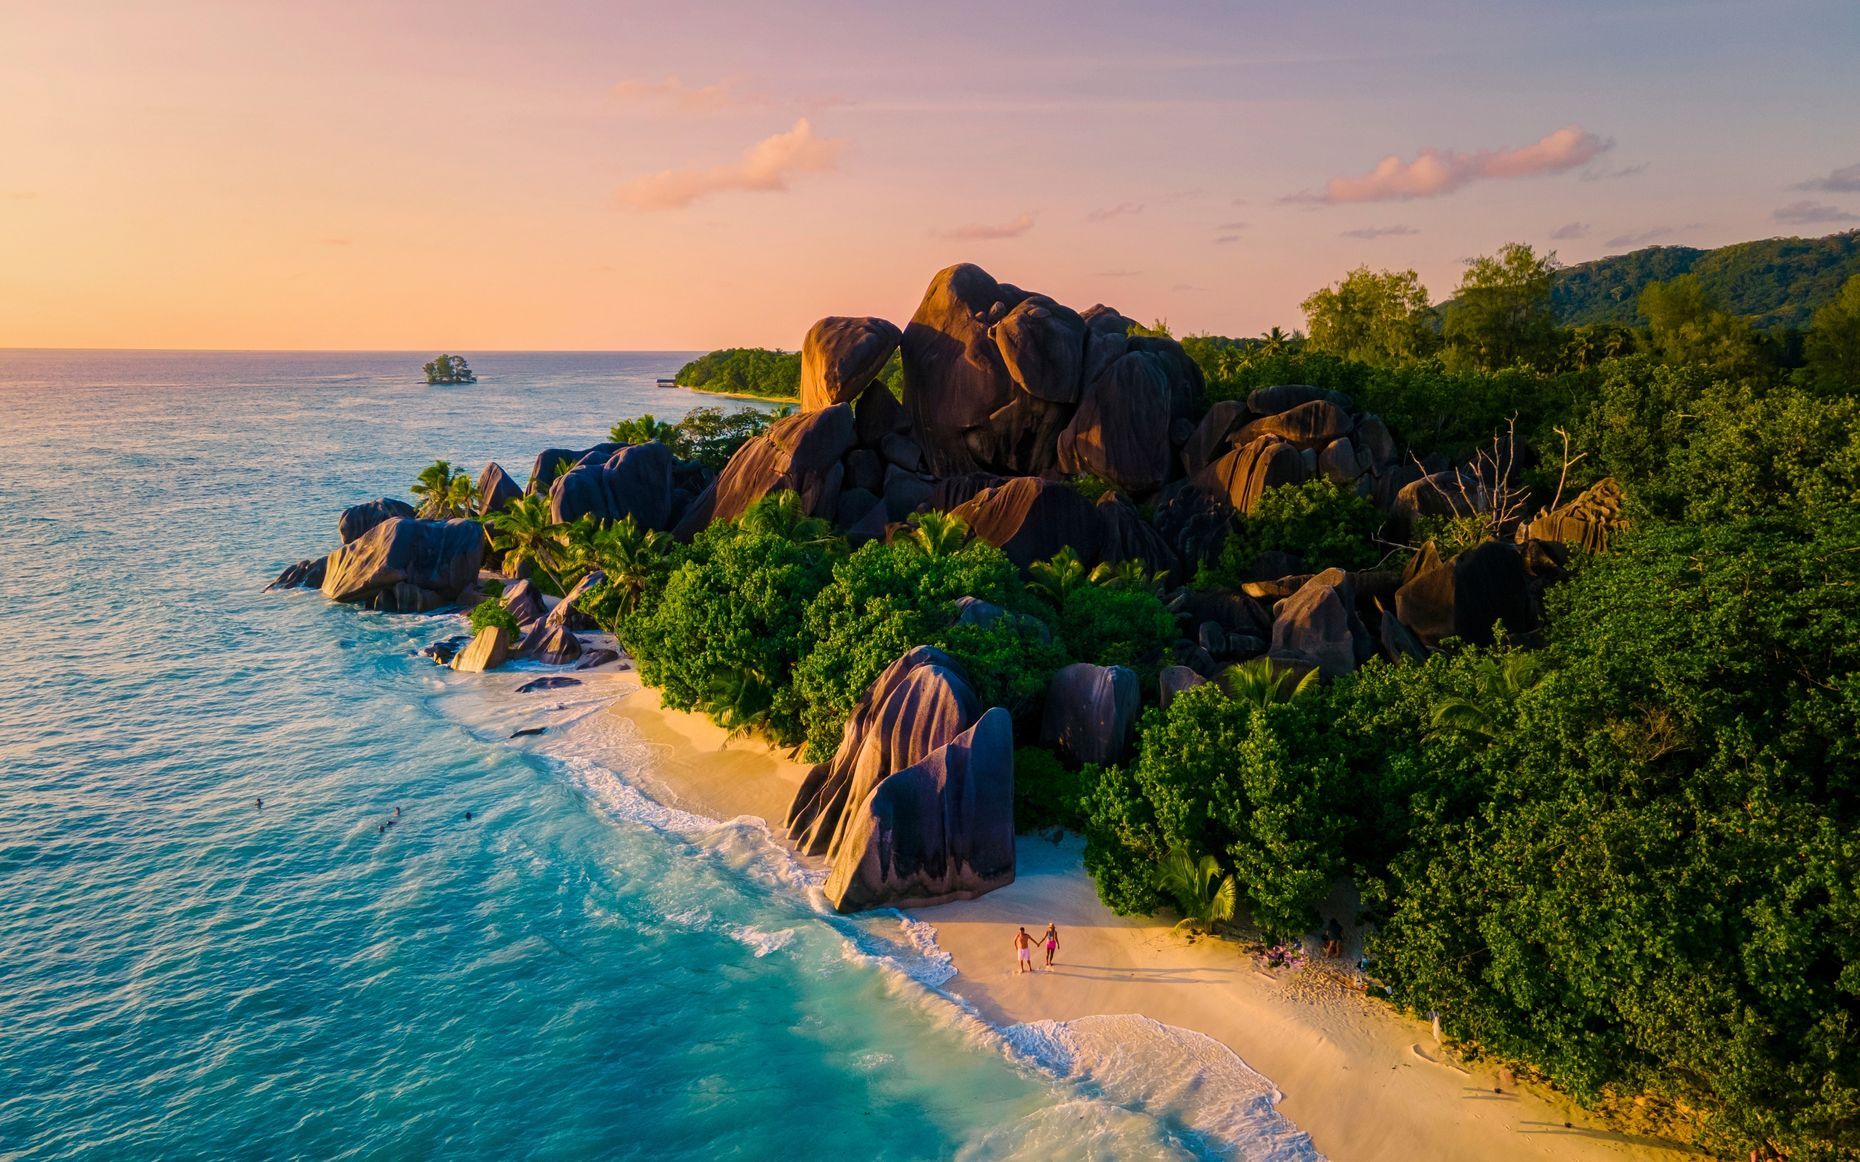 <p>Entre mai et octobre, l’île de <a href="https://www.seychelles.com/listingdetails/5fc5e2a47d35d21730f781d3">La Digue</a> aux Seychelles offre une évasion tropicale incomparable avec ses plages étincelantes, ses eaux turquoise et son ambiance détendue. Les activités incontournables incluent la découverte des plages emblématiques comme Anse Source d’Argent, célèbre pour ses impressionnantes formations rocheuses, et Anse Cocos, accessible par une randonnée pittoresque à travers la jungle. Les voyageurs pourront également explorer la réserve naturelle de la Veuve, un habitat protégé d’oiseaux rares.</p>